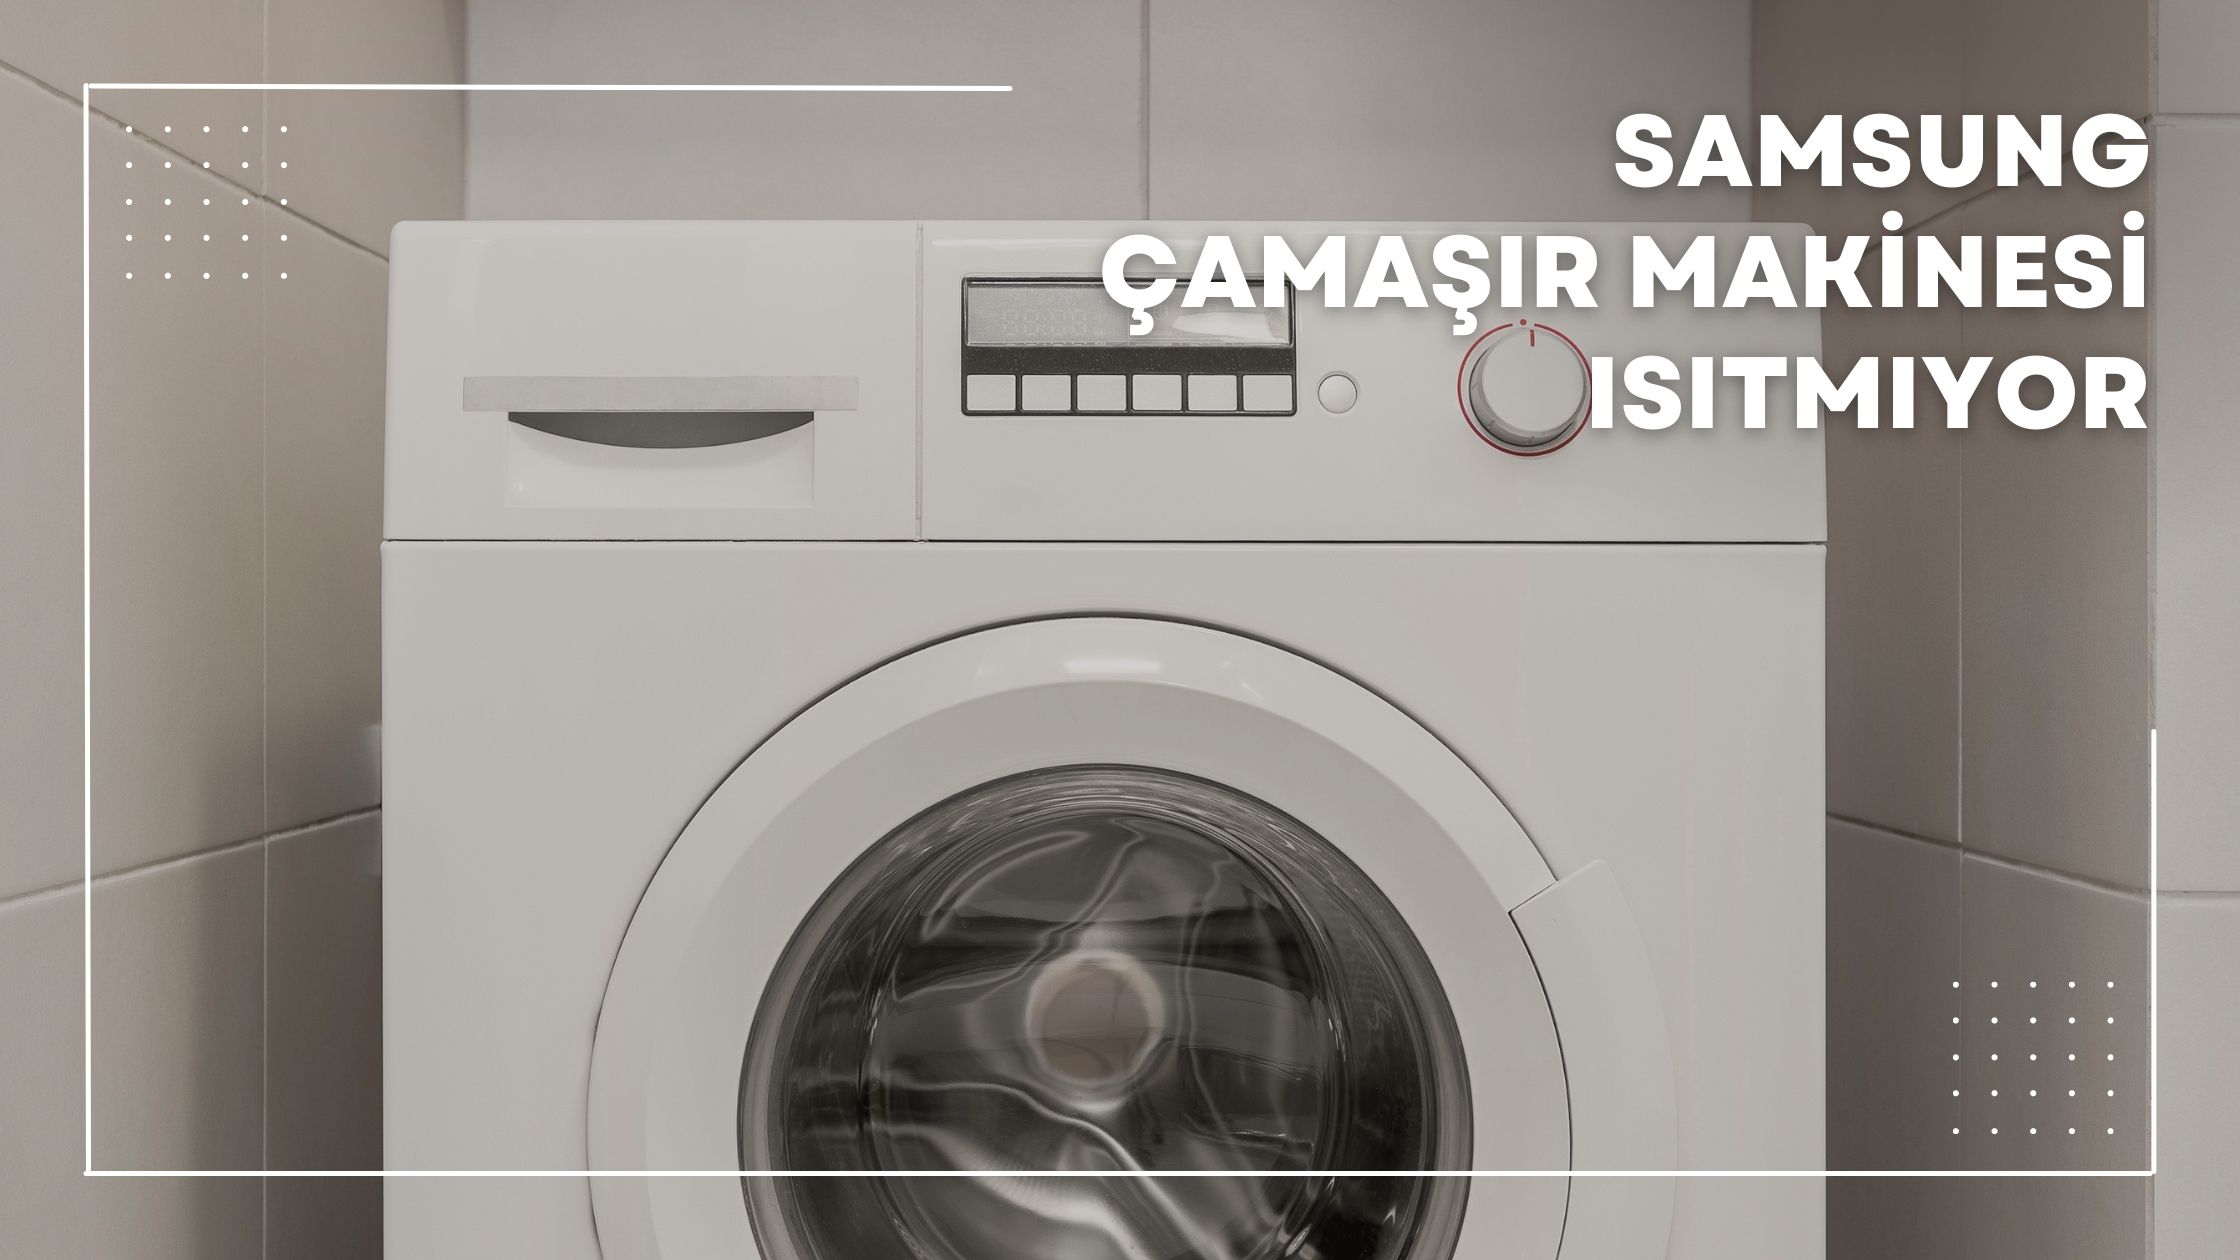 Samsung Çamaşır Makinesi Isıtmıyor